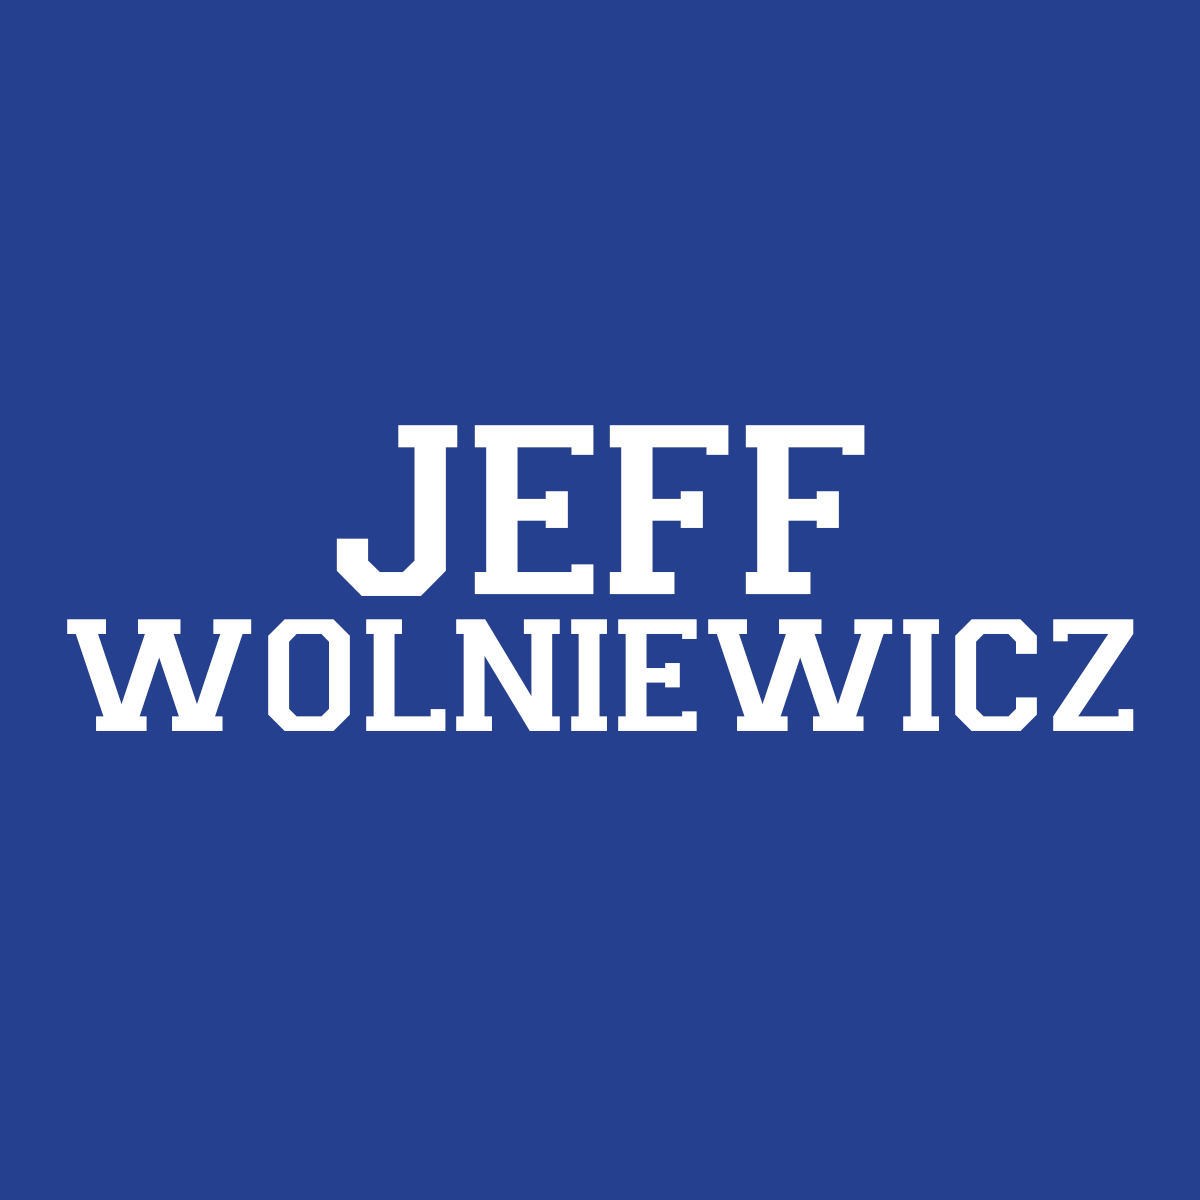 Jeff Wolniewicz